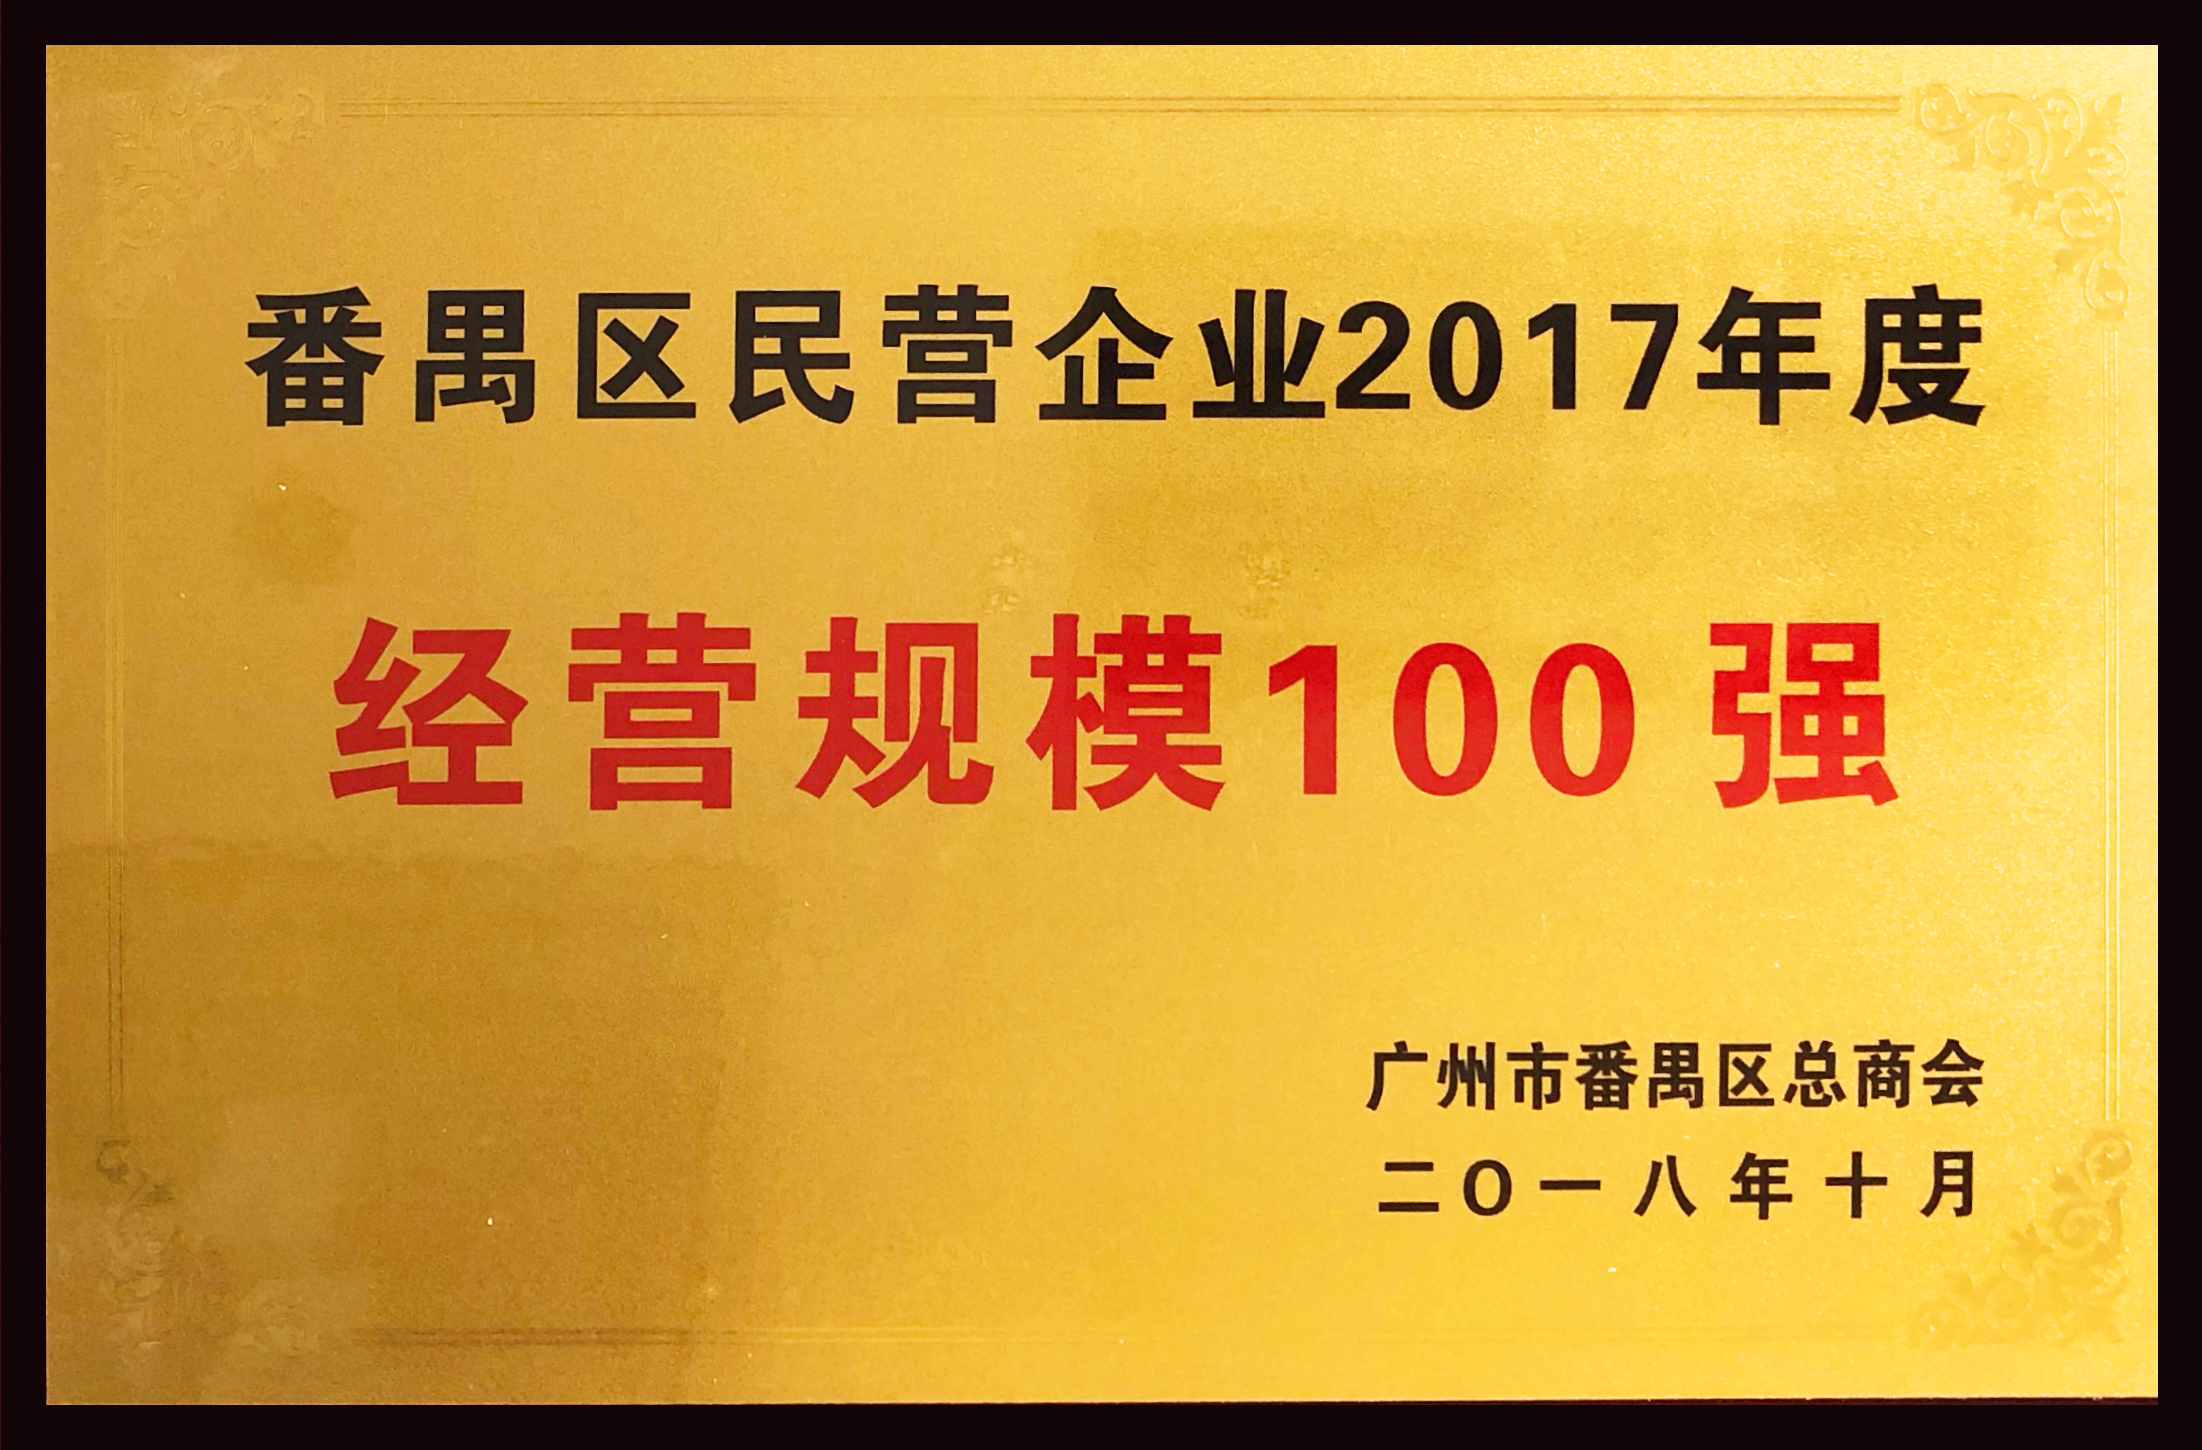 番禺區民營企業2017年度經營規模100強